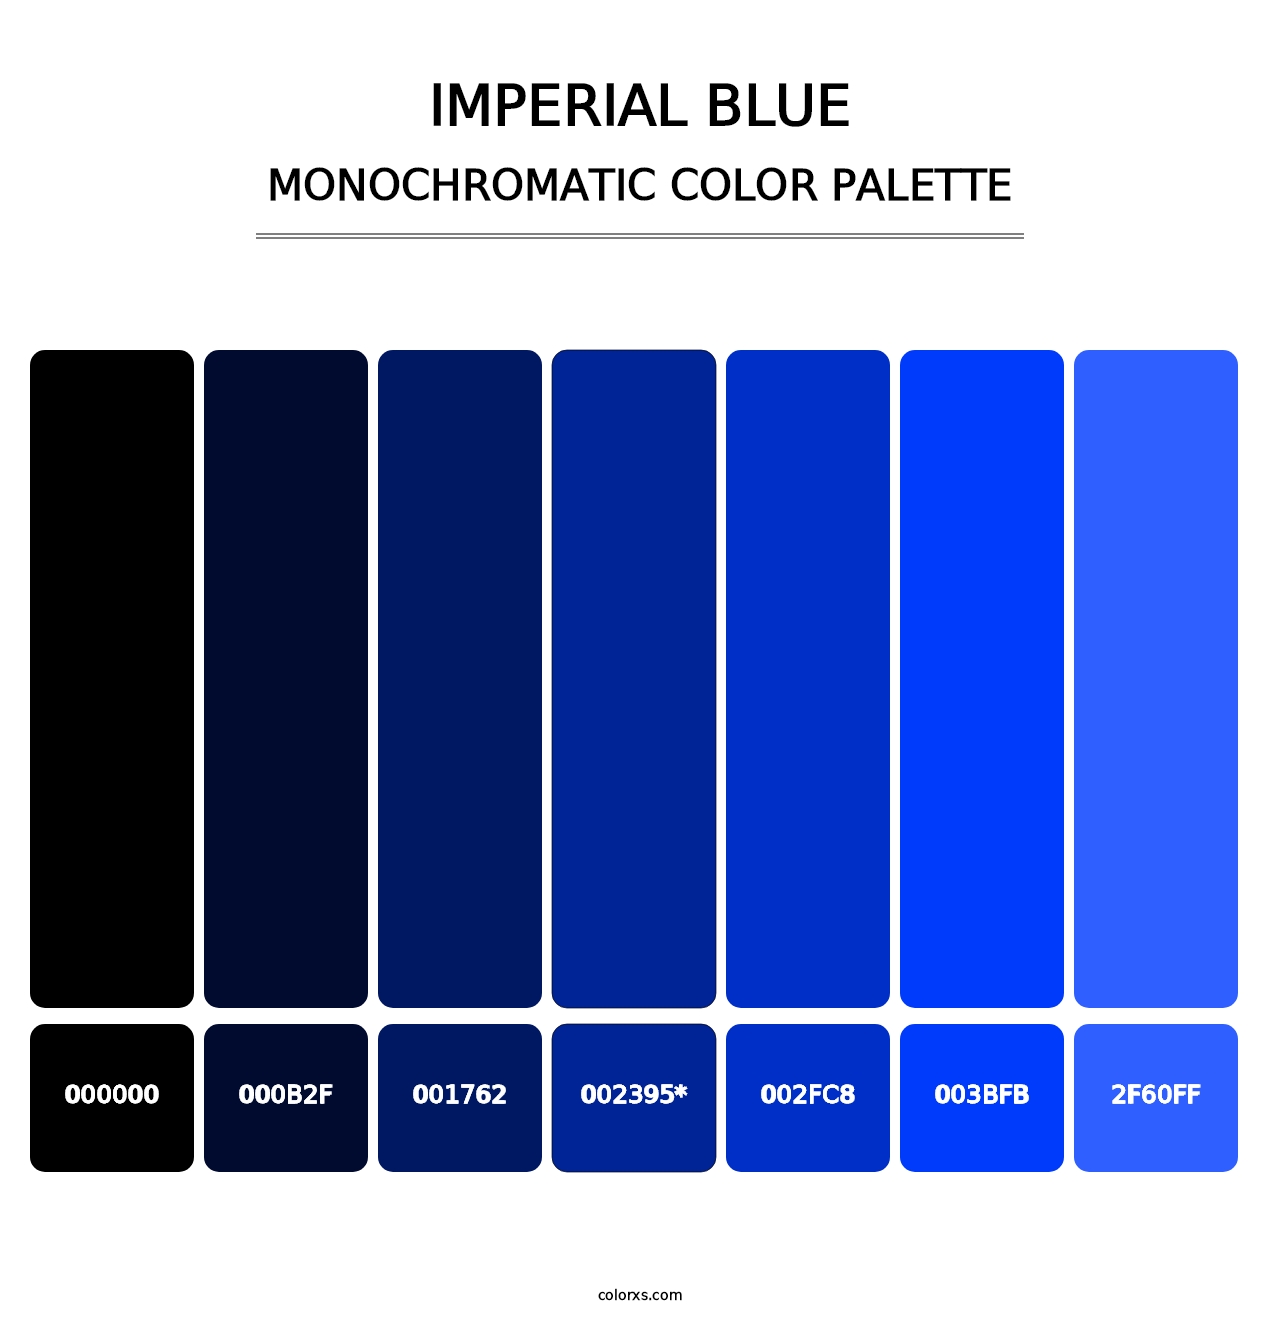 Imperial Blue - Monochromatic Color Palette